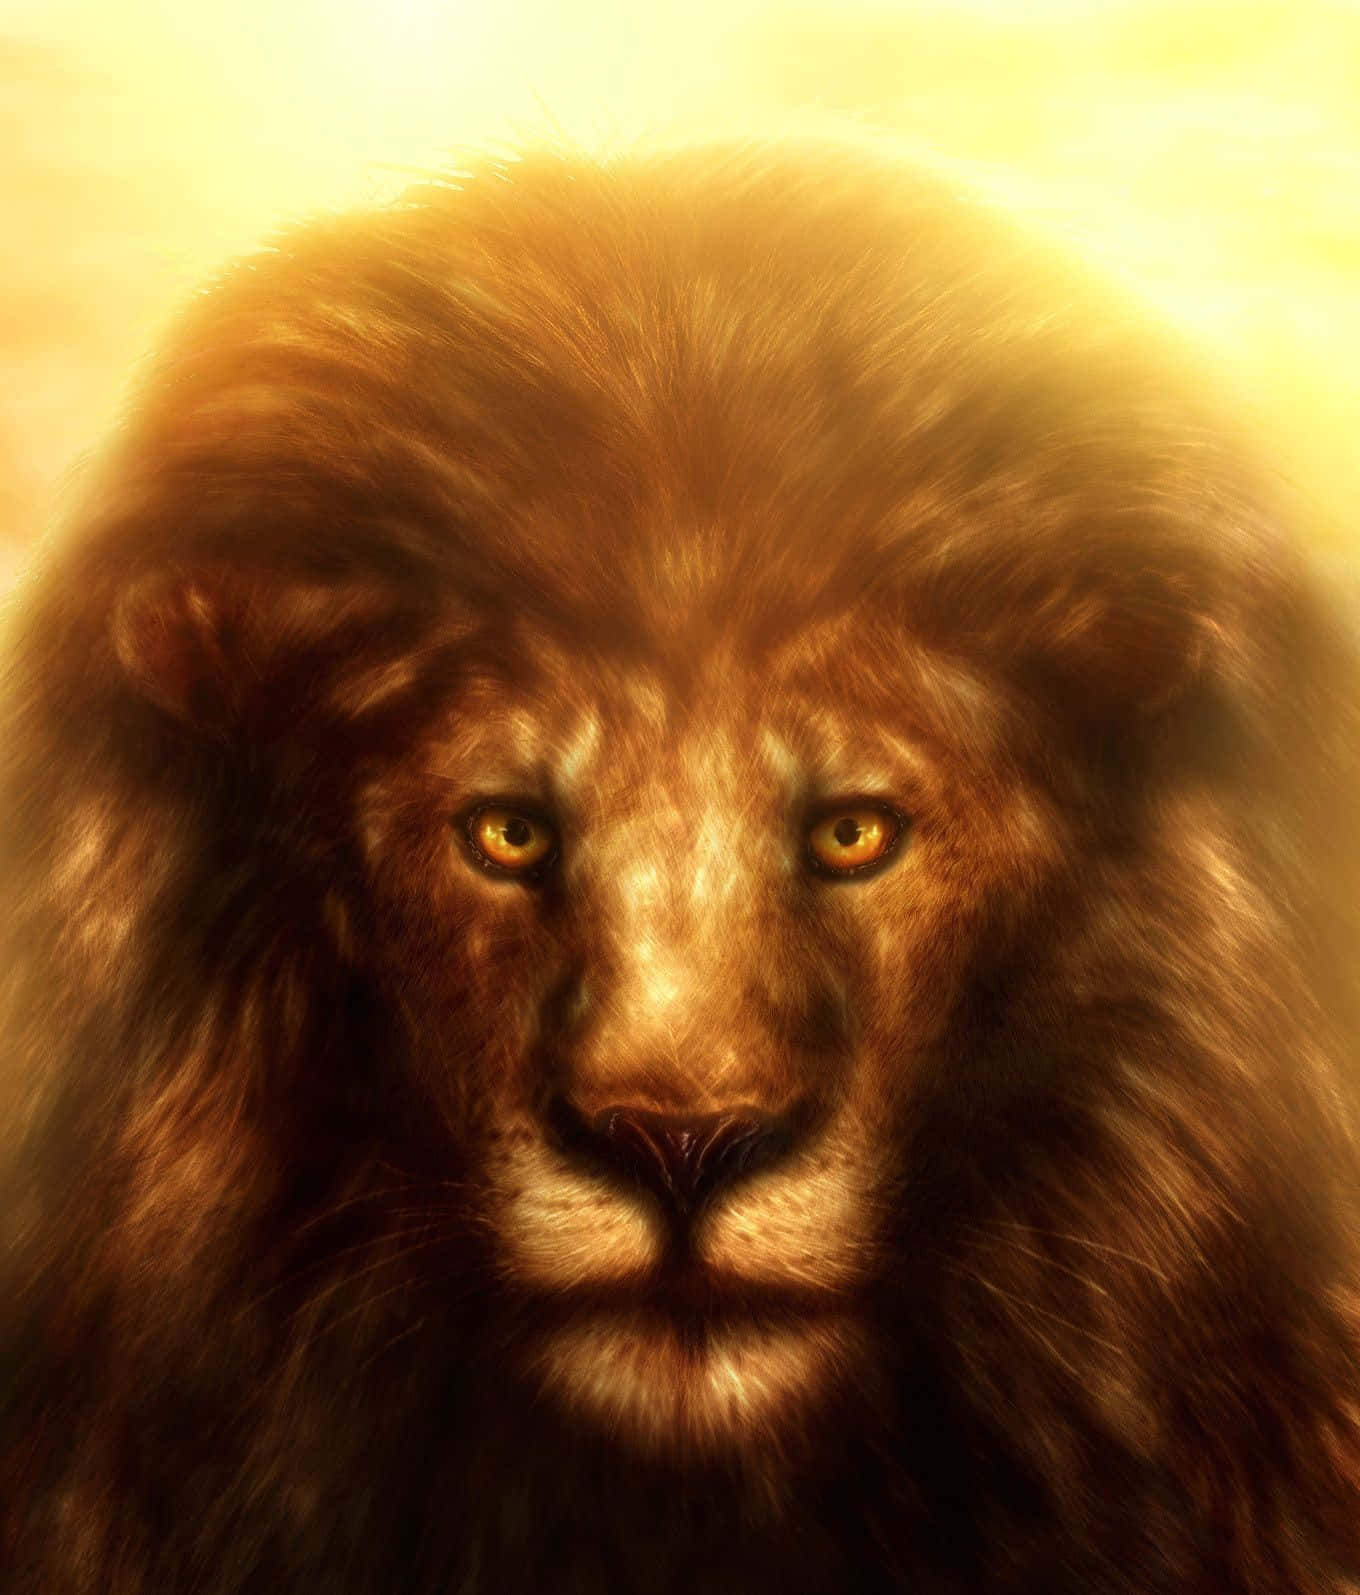 Majestic Roaring Lion Of Judah Wallpaper